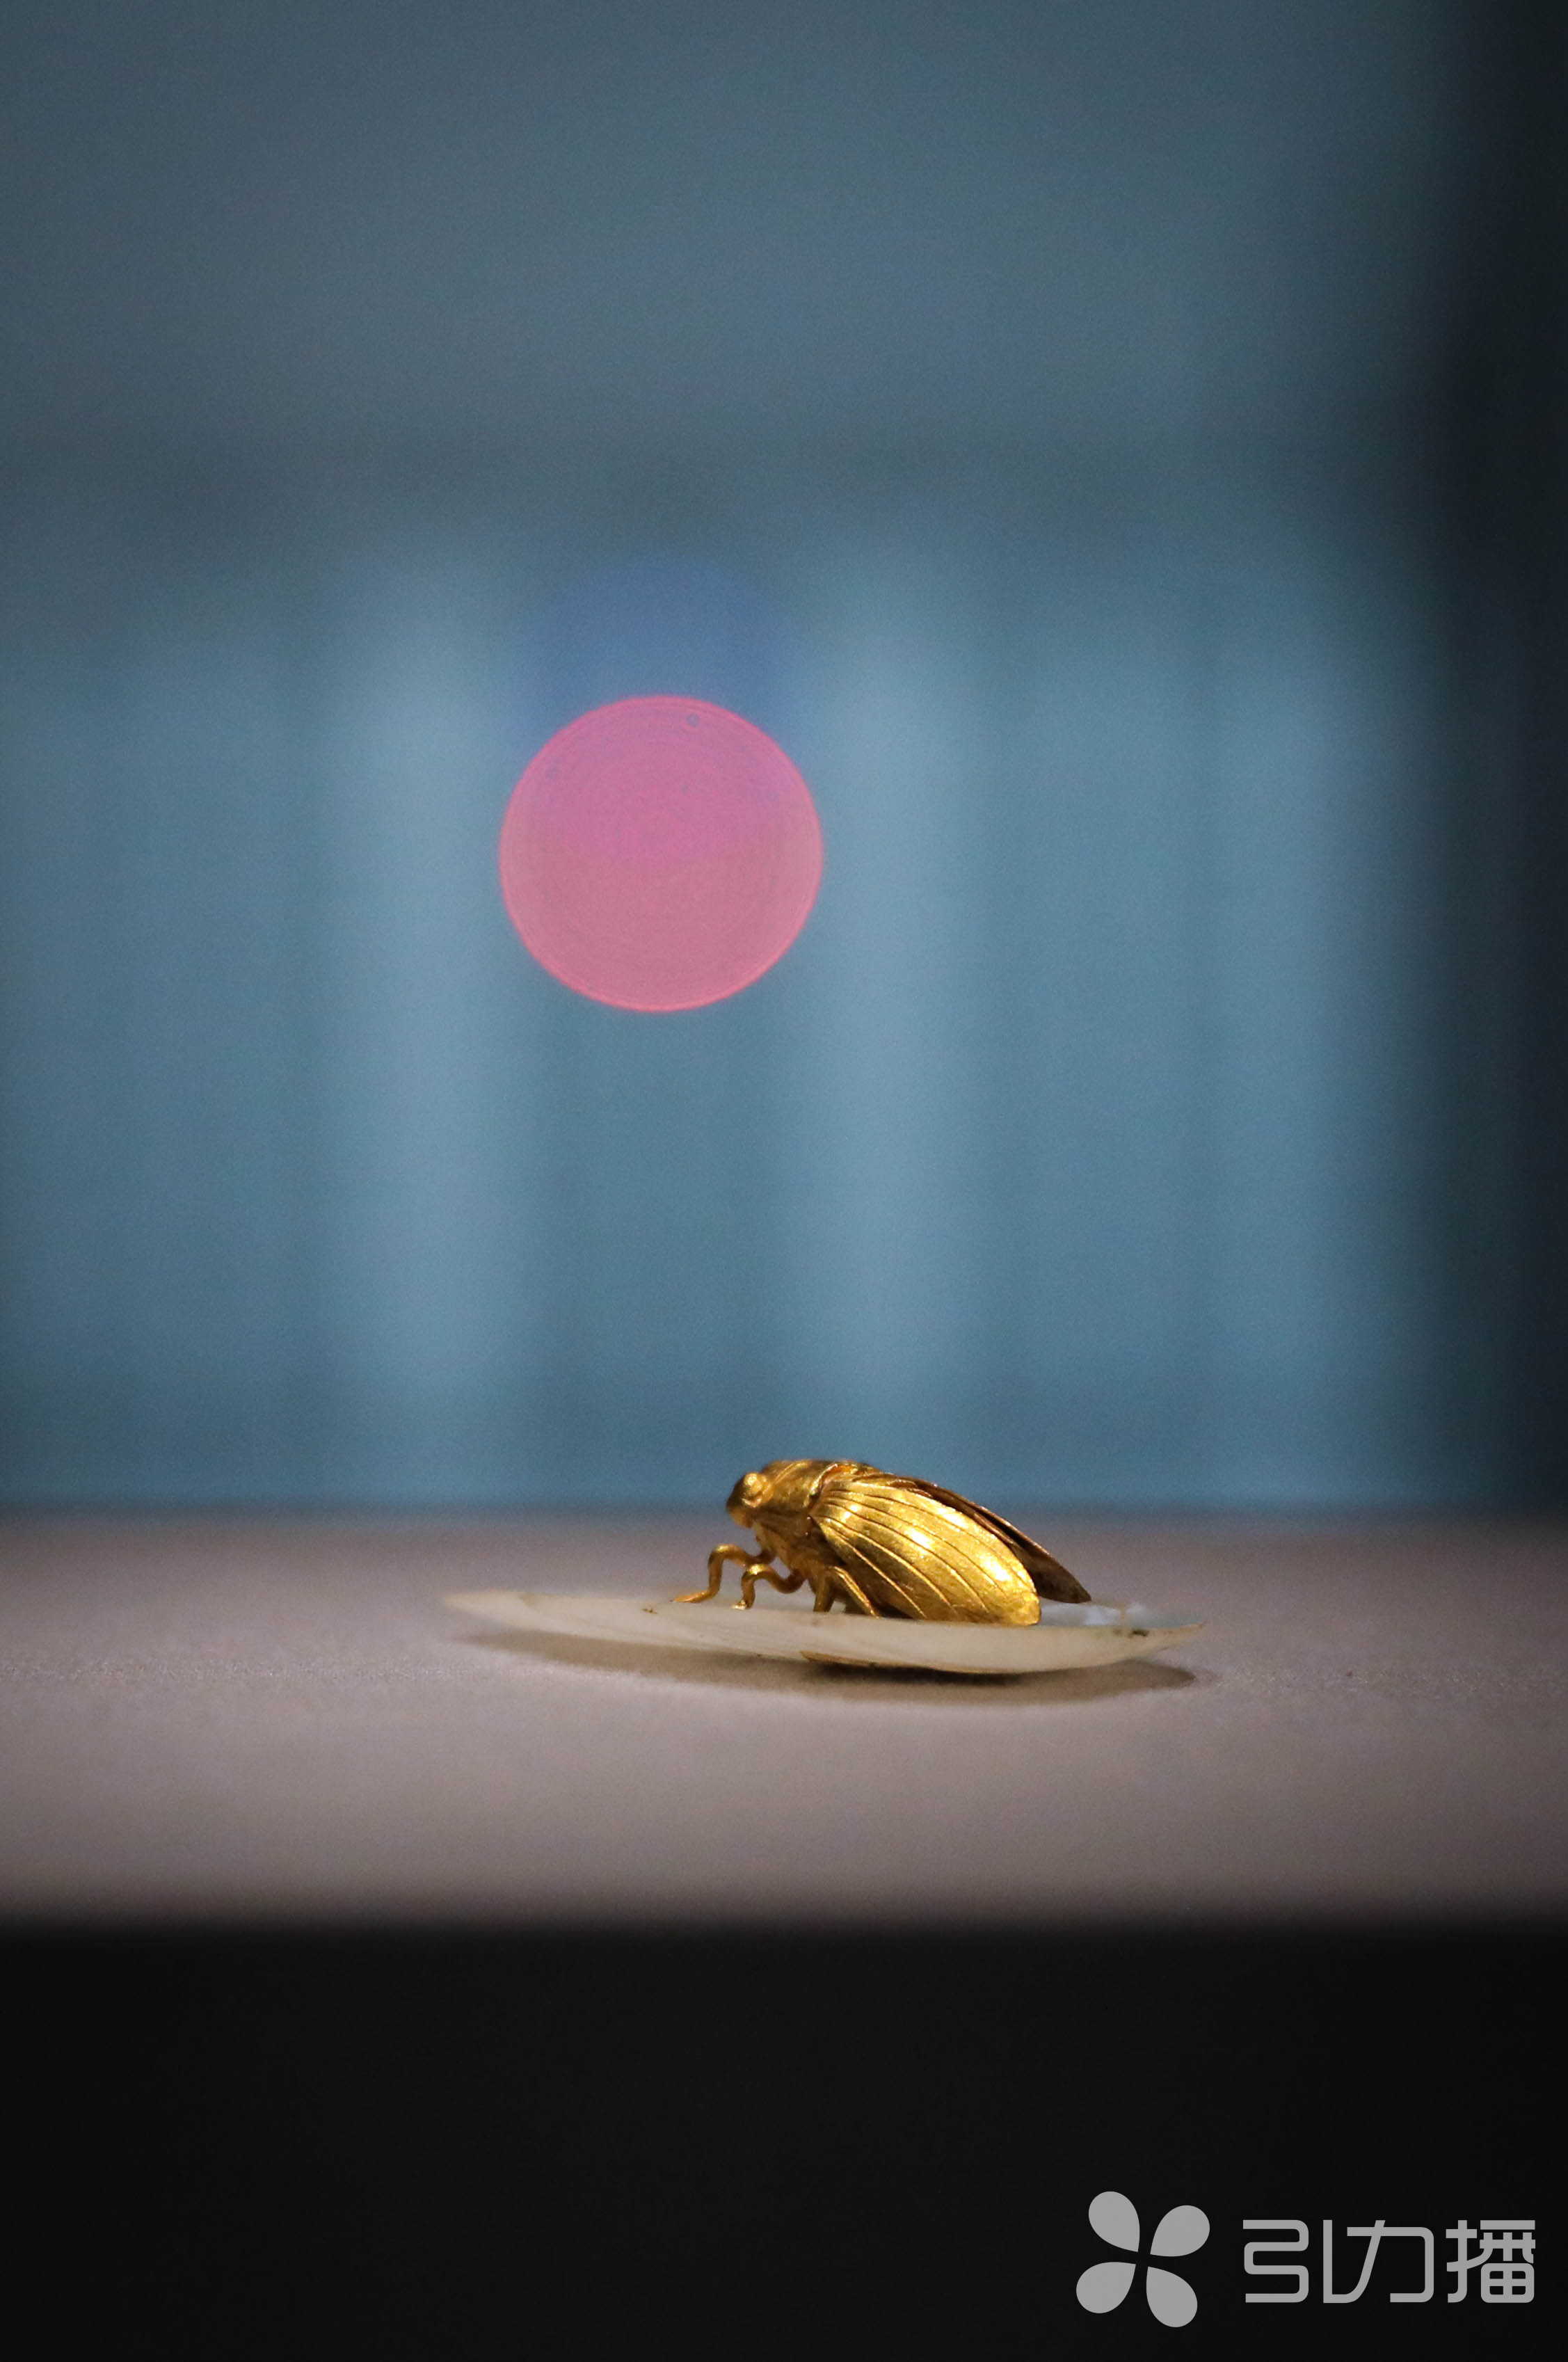 蜕变中的金蝉 - 新影像萌宠 花粉俱乐部